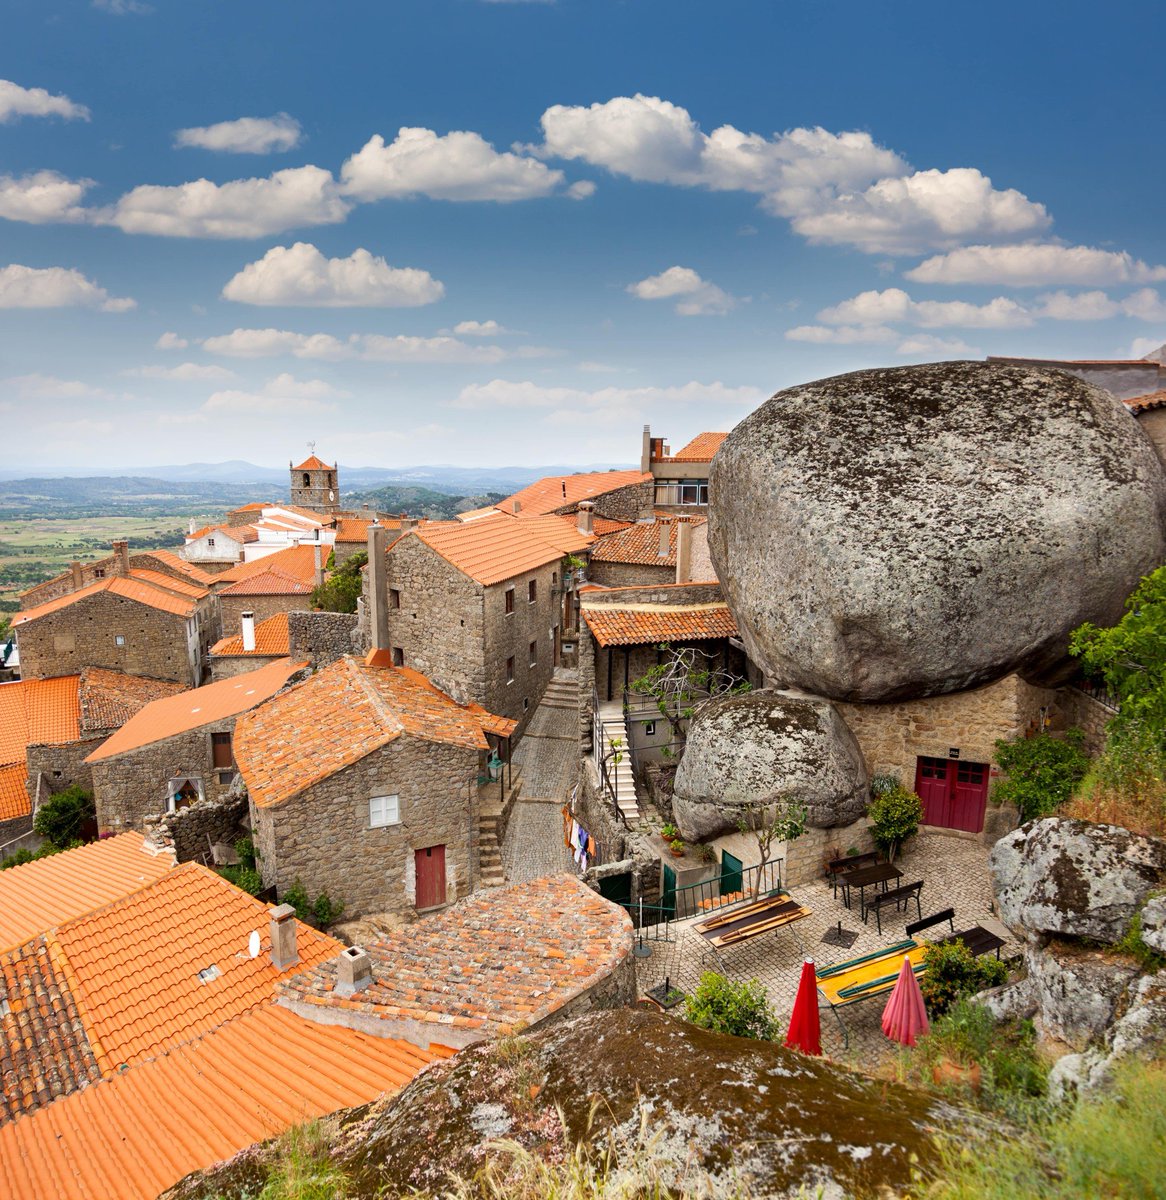 【 の風景】 ポルトガル東部に位置する人口は200人ほどの小さな都市。もっともポルトガルらしい村として有名であり、石造りの建造物が立ち並ぶ独特の街並みとなっている。